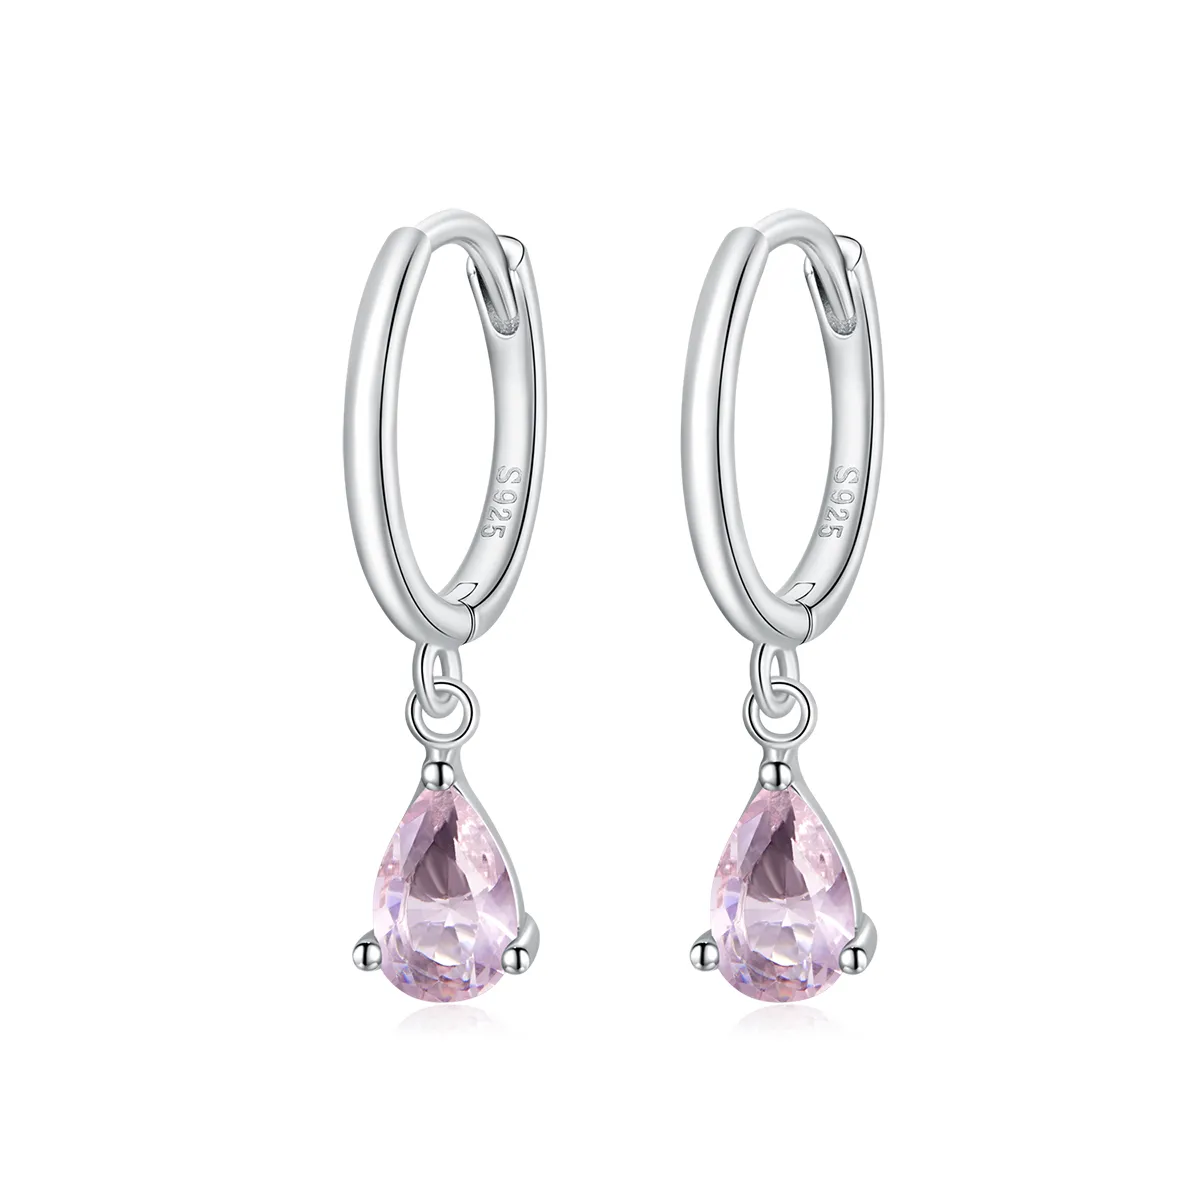 Pandora Style Silver Drop Dangle Earrings - SCE1018-PK